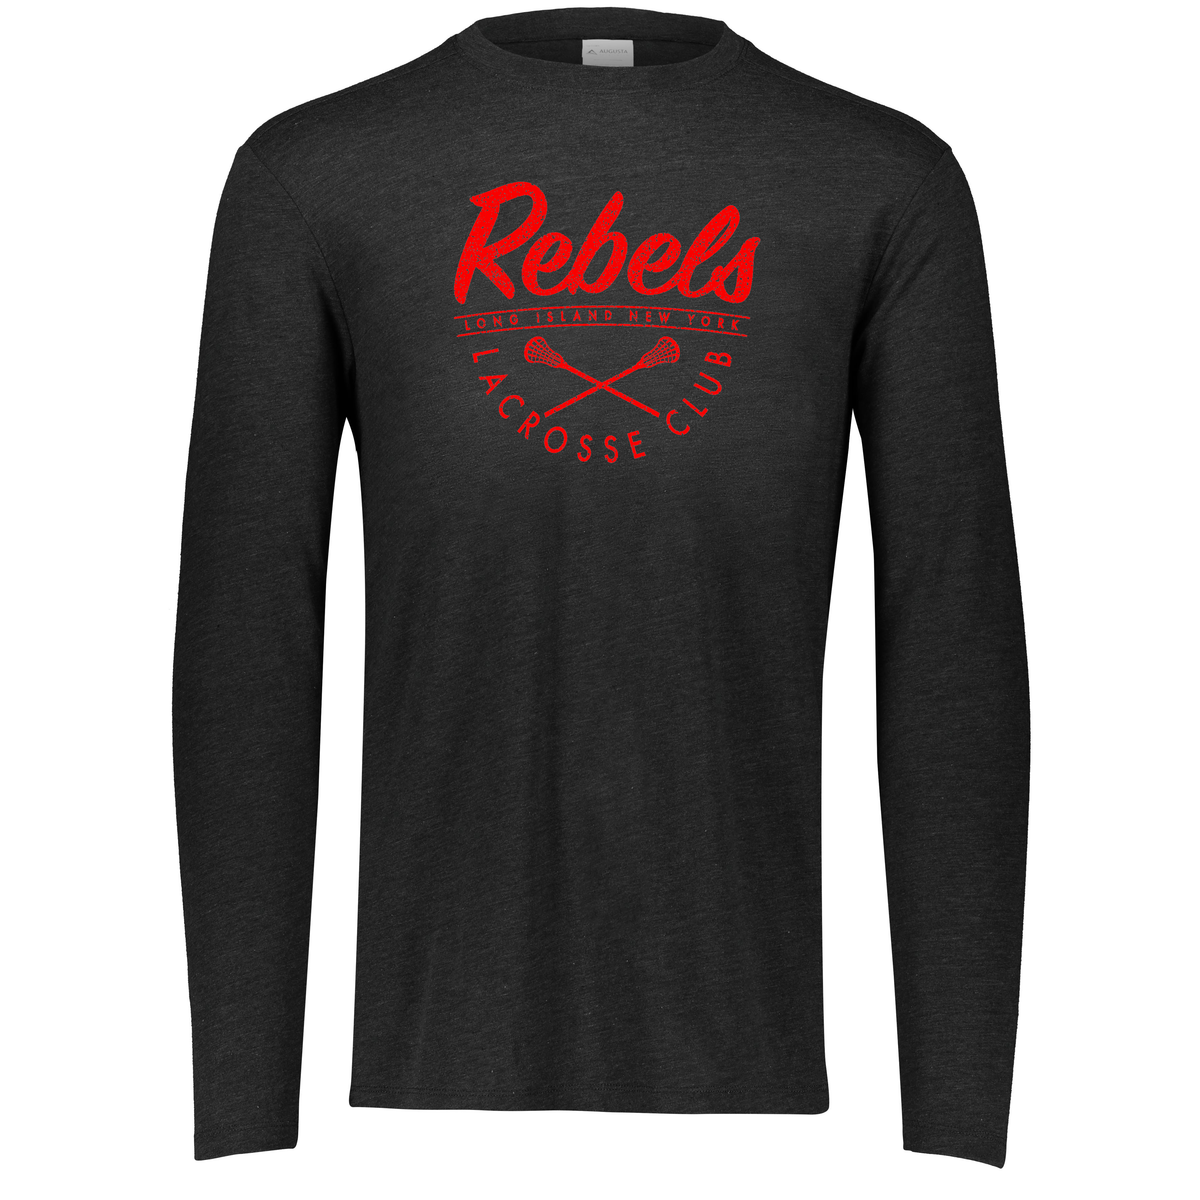 Rebels Lacrosse Tri-Blend Long Sleeve Crew